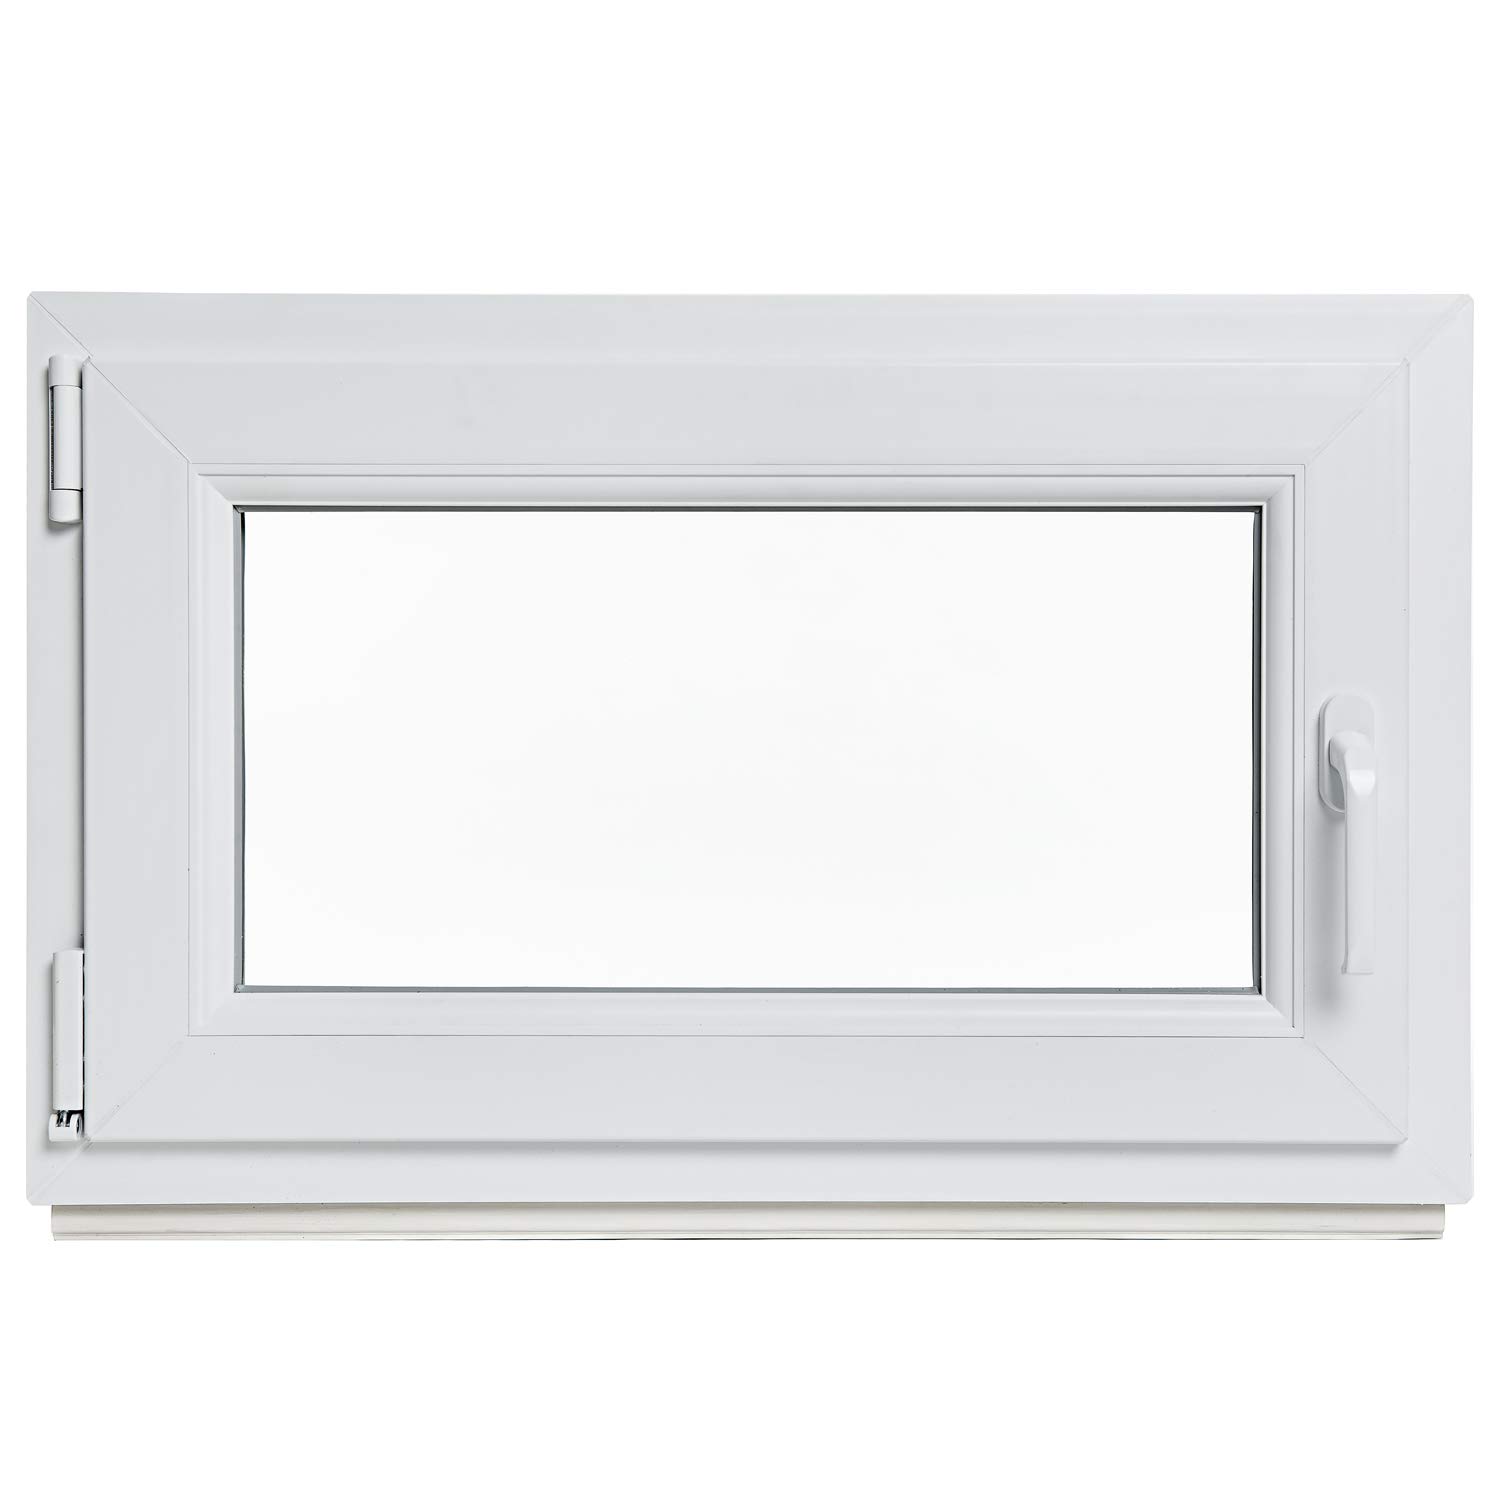 Kellerfenster - Kunststoff - Fenster - weiß - BxH: 80 x 80 cm - DIN rechts - 3-fach-Verglasung - Lagerware